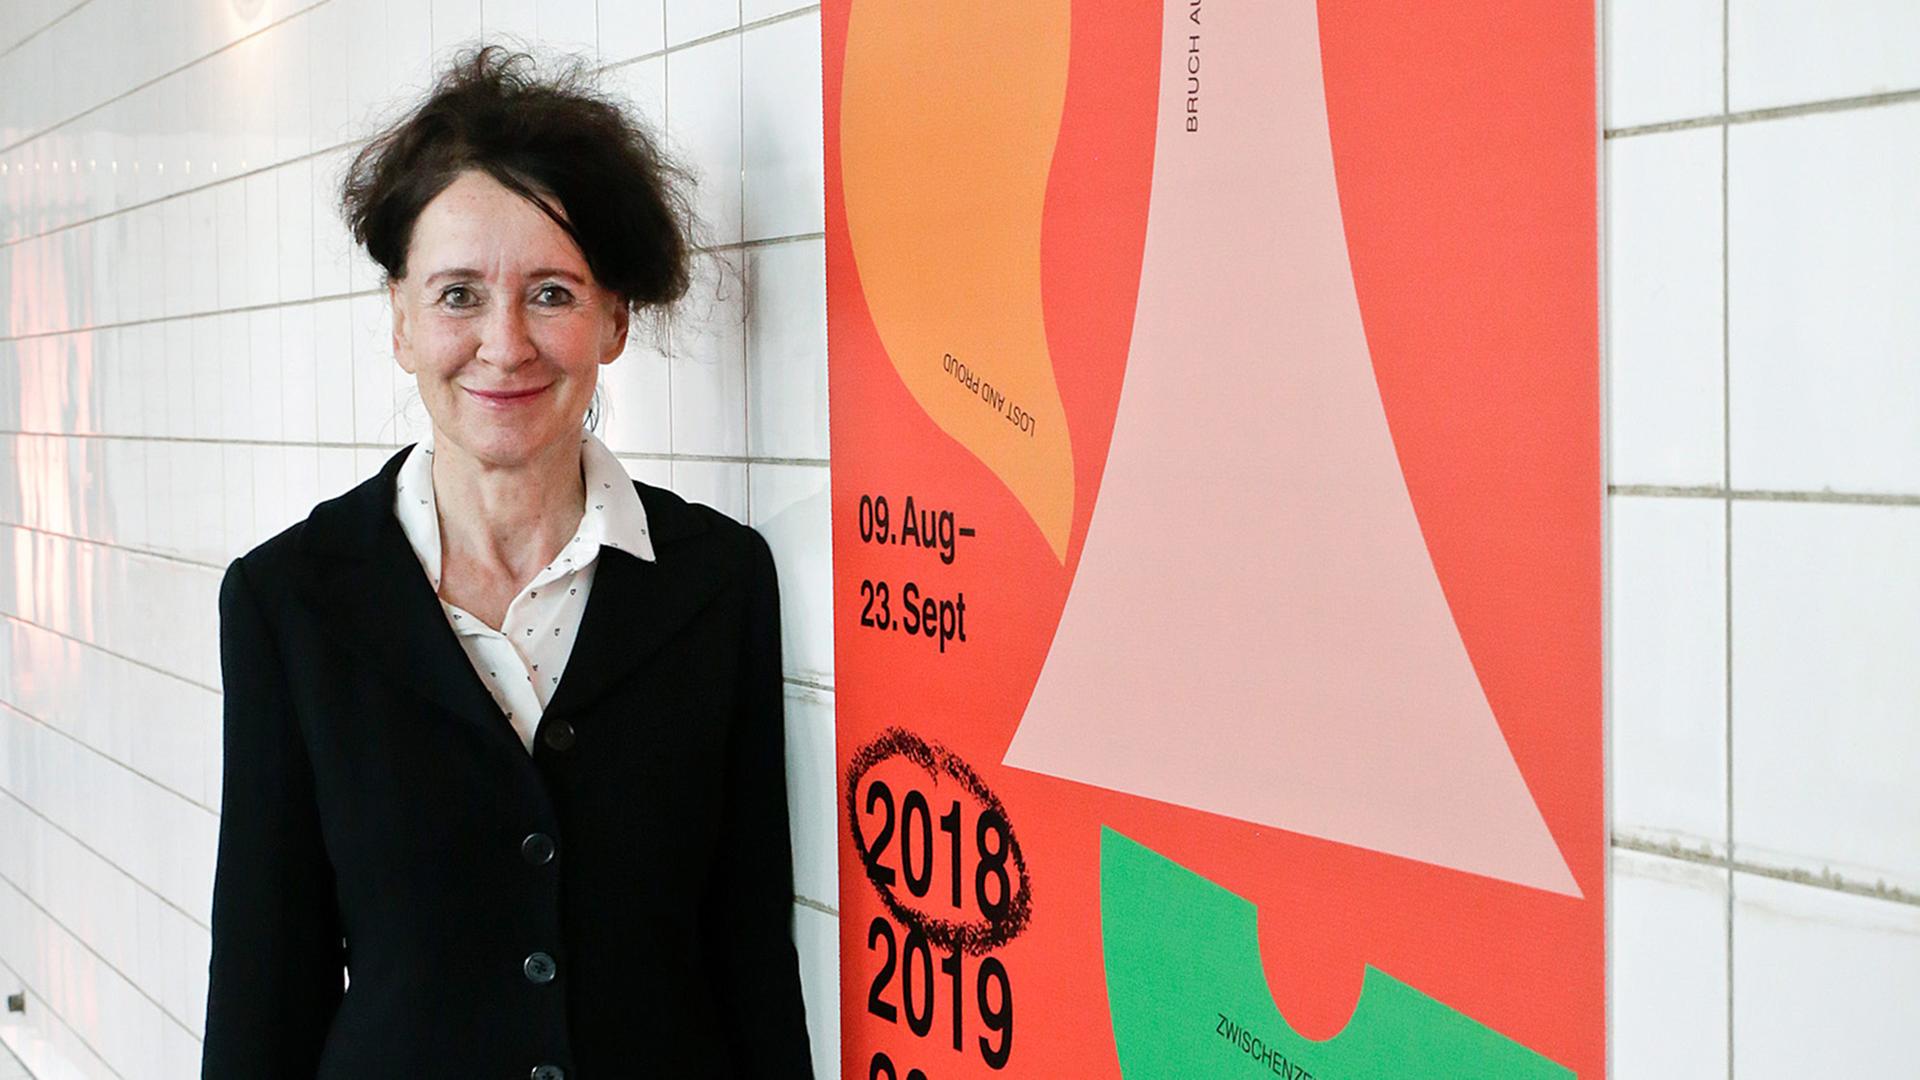 Ruhrtriennale-Intendantin Stefanie Carp bei der Programmpräsentation, rechts ein Plakat zur Ruhrtriennale 2018-2020